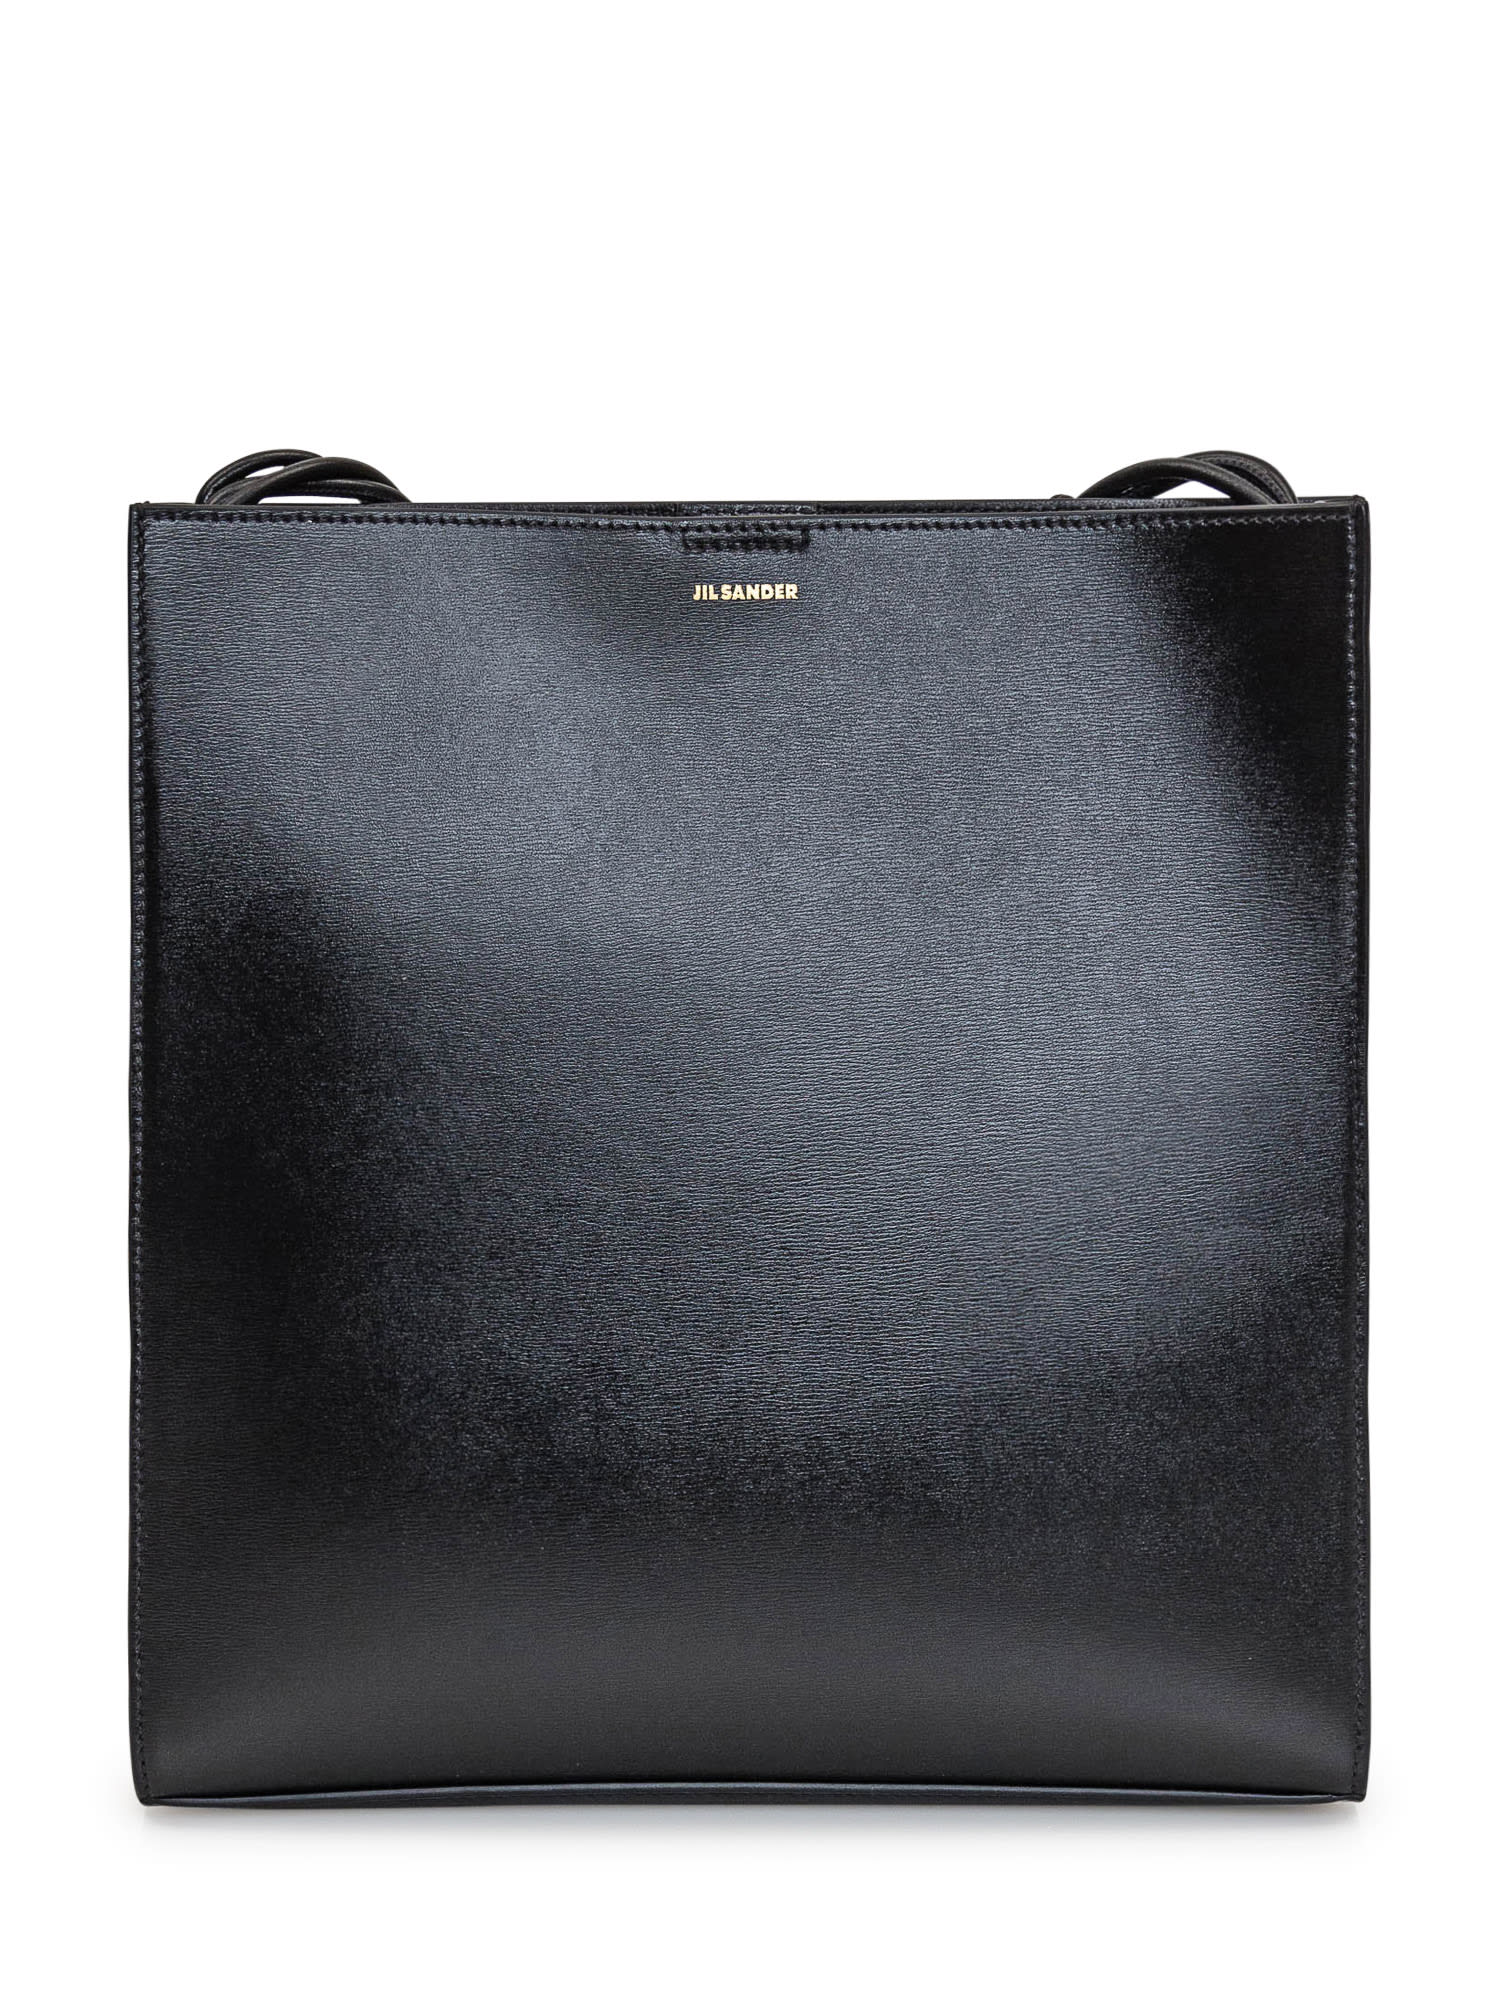 Jil Sander Tangle Medium Bag In Black